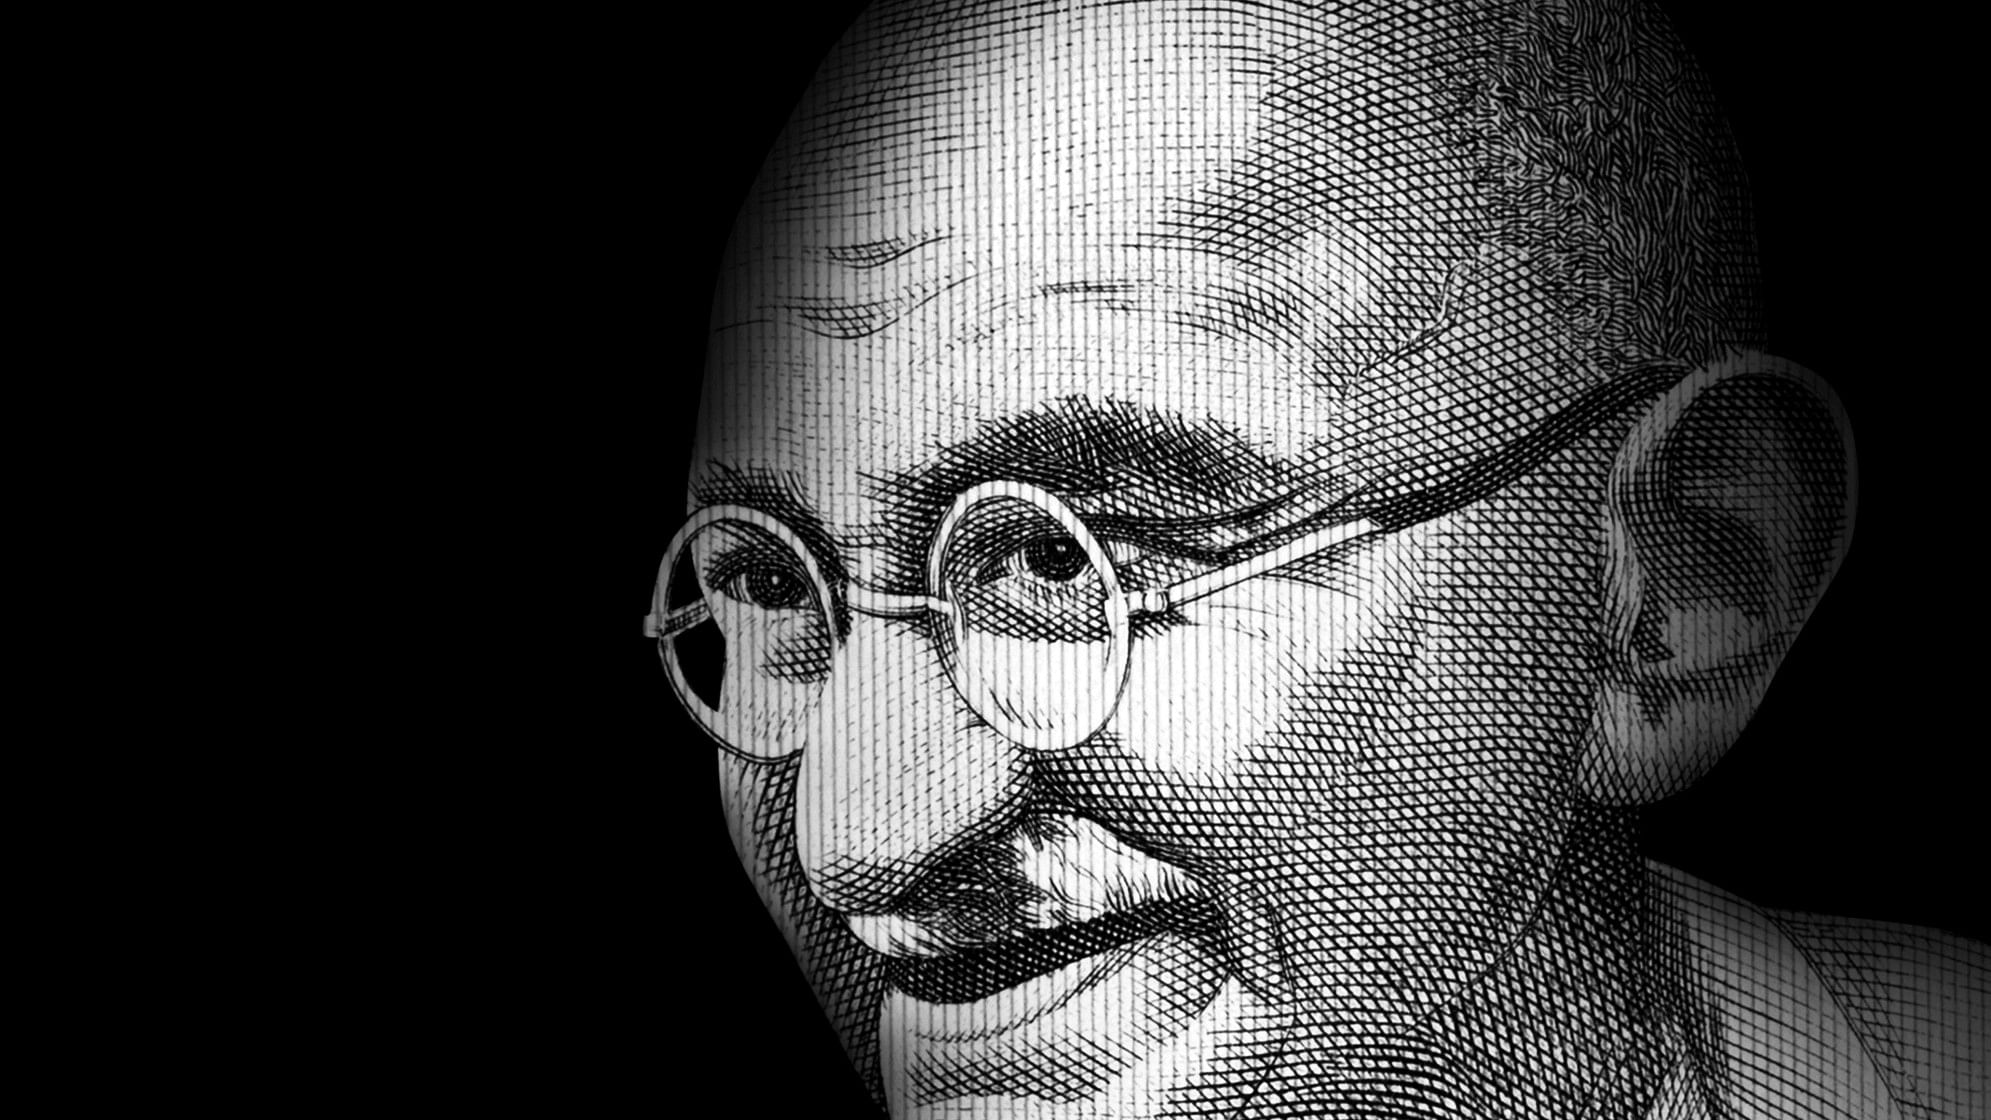 <div class="paragraphs"><p>Illustration showing Mahatma Gandhi.</p></div>